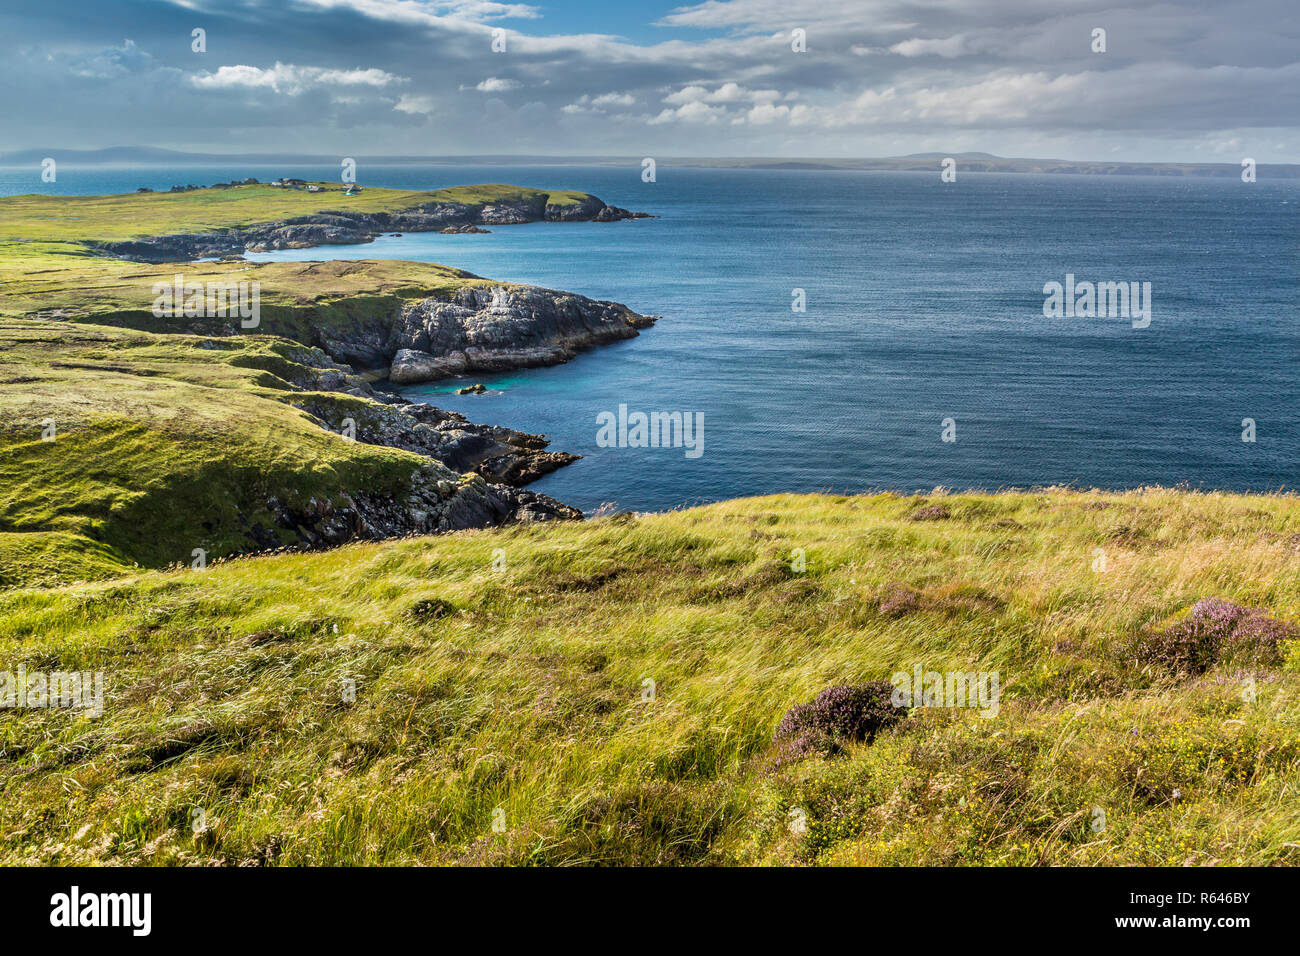 La côte écossaise, Isle Of Lewis, îles Hébrides, Ecosse, Royaume-Uni Banque D'Images